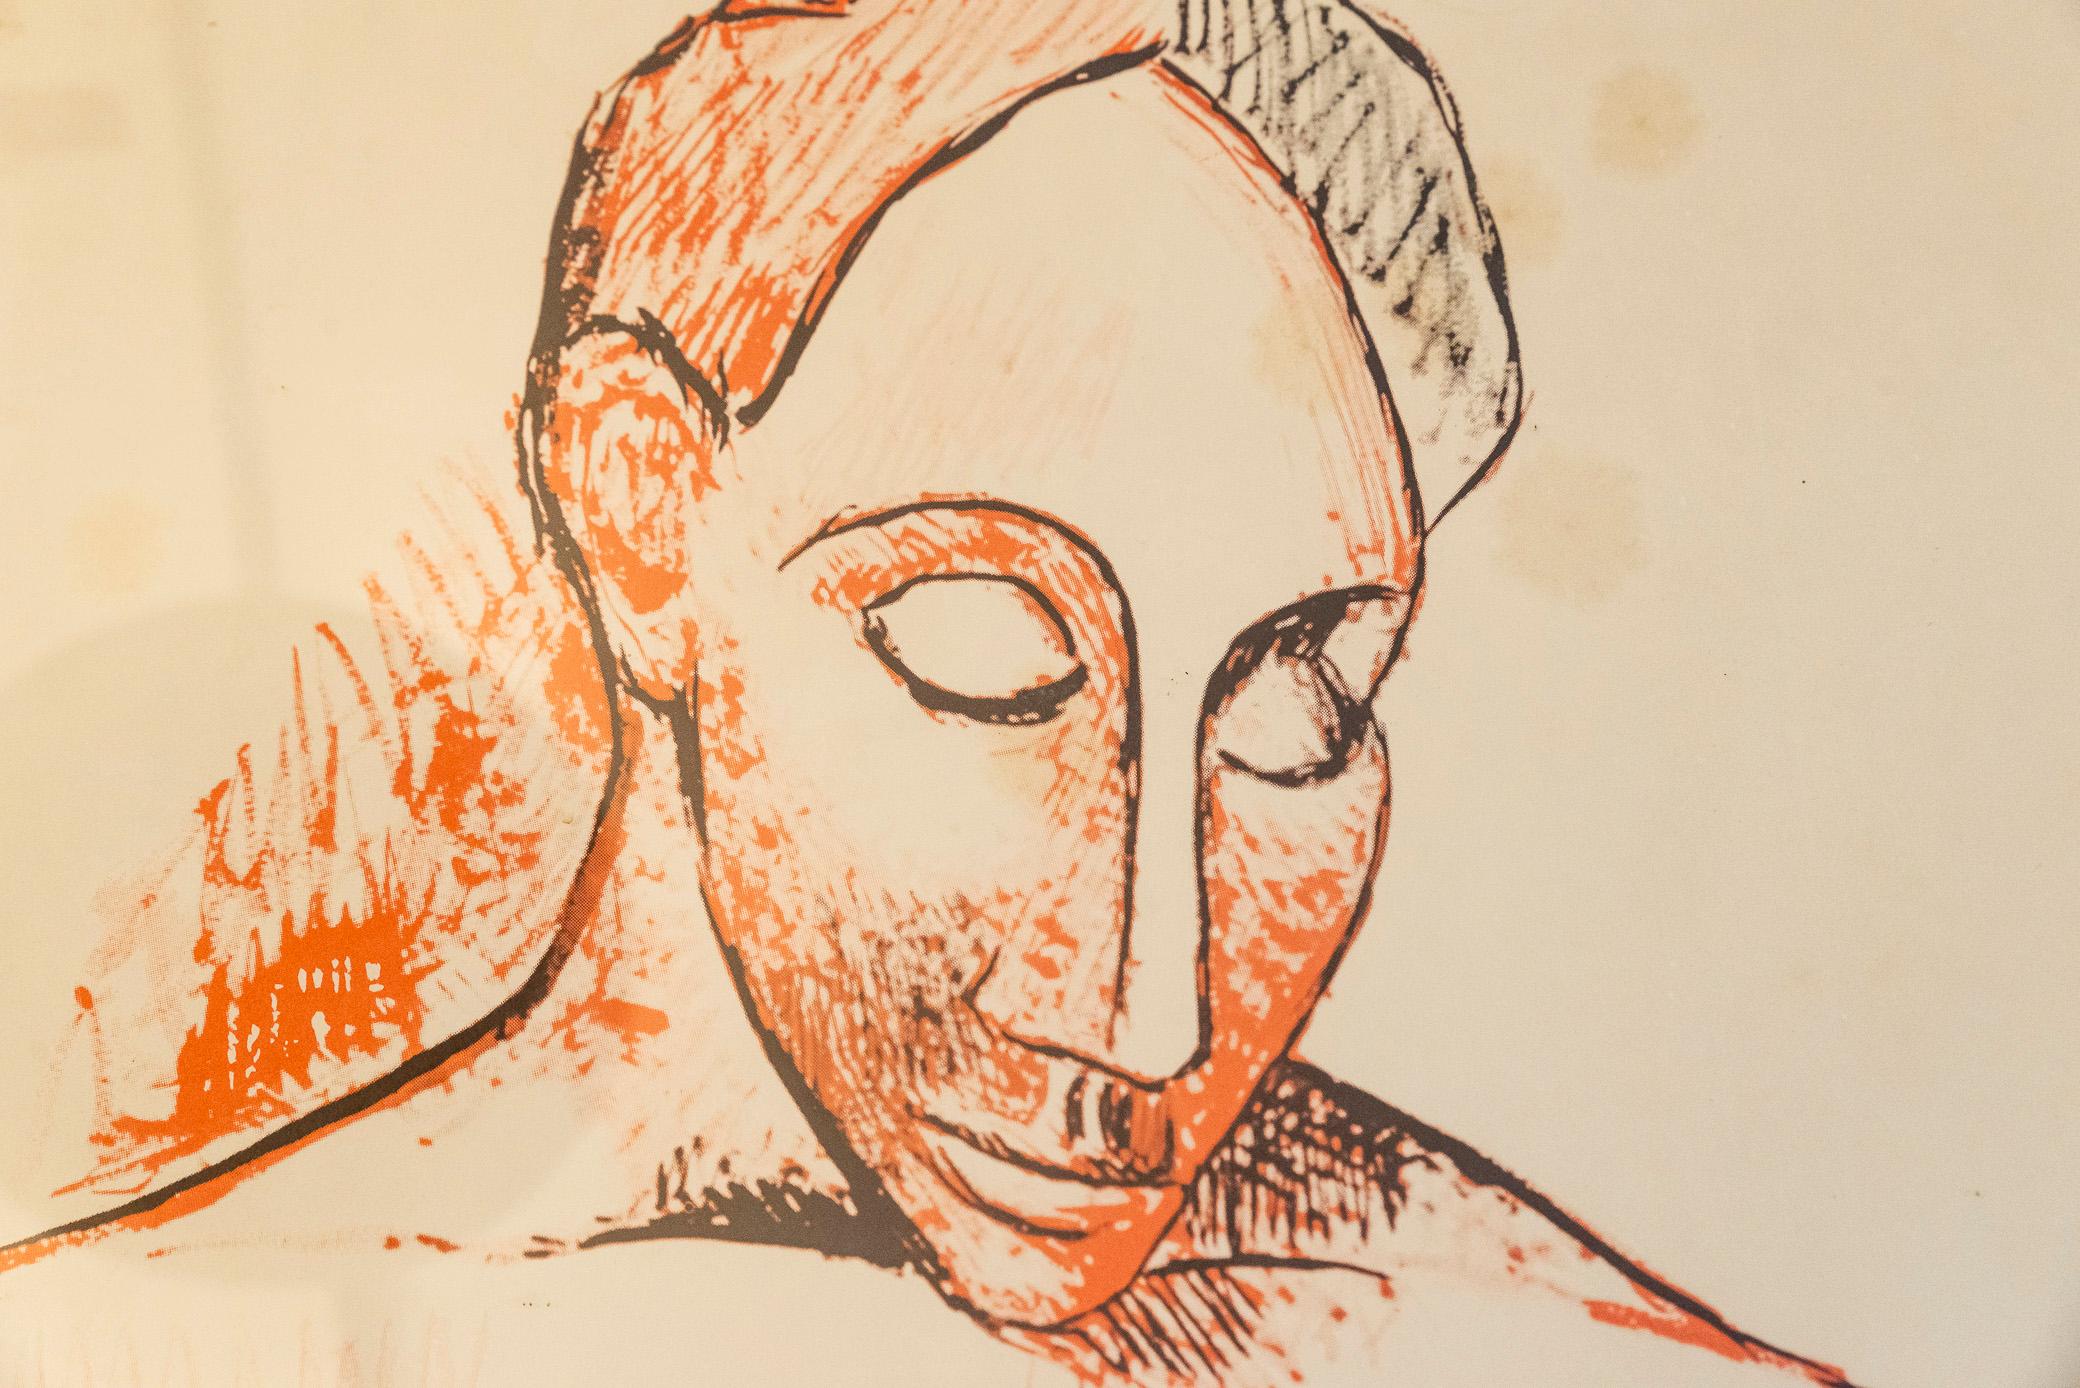 Affiche d'exposition originale de Picasso,
Encadré,
Édition de 2000,
Imprimé par Schwenk-Wilk, Francfort, 1965,
Allemagne, 1965.

Dimensions : 58 x 84 cm.

Bibliographie : N°223, 